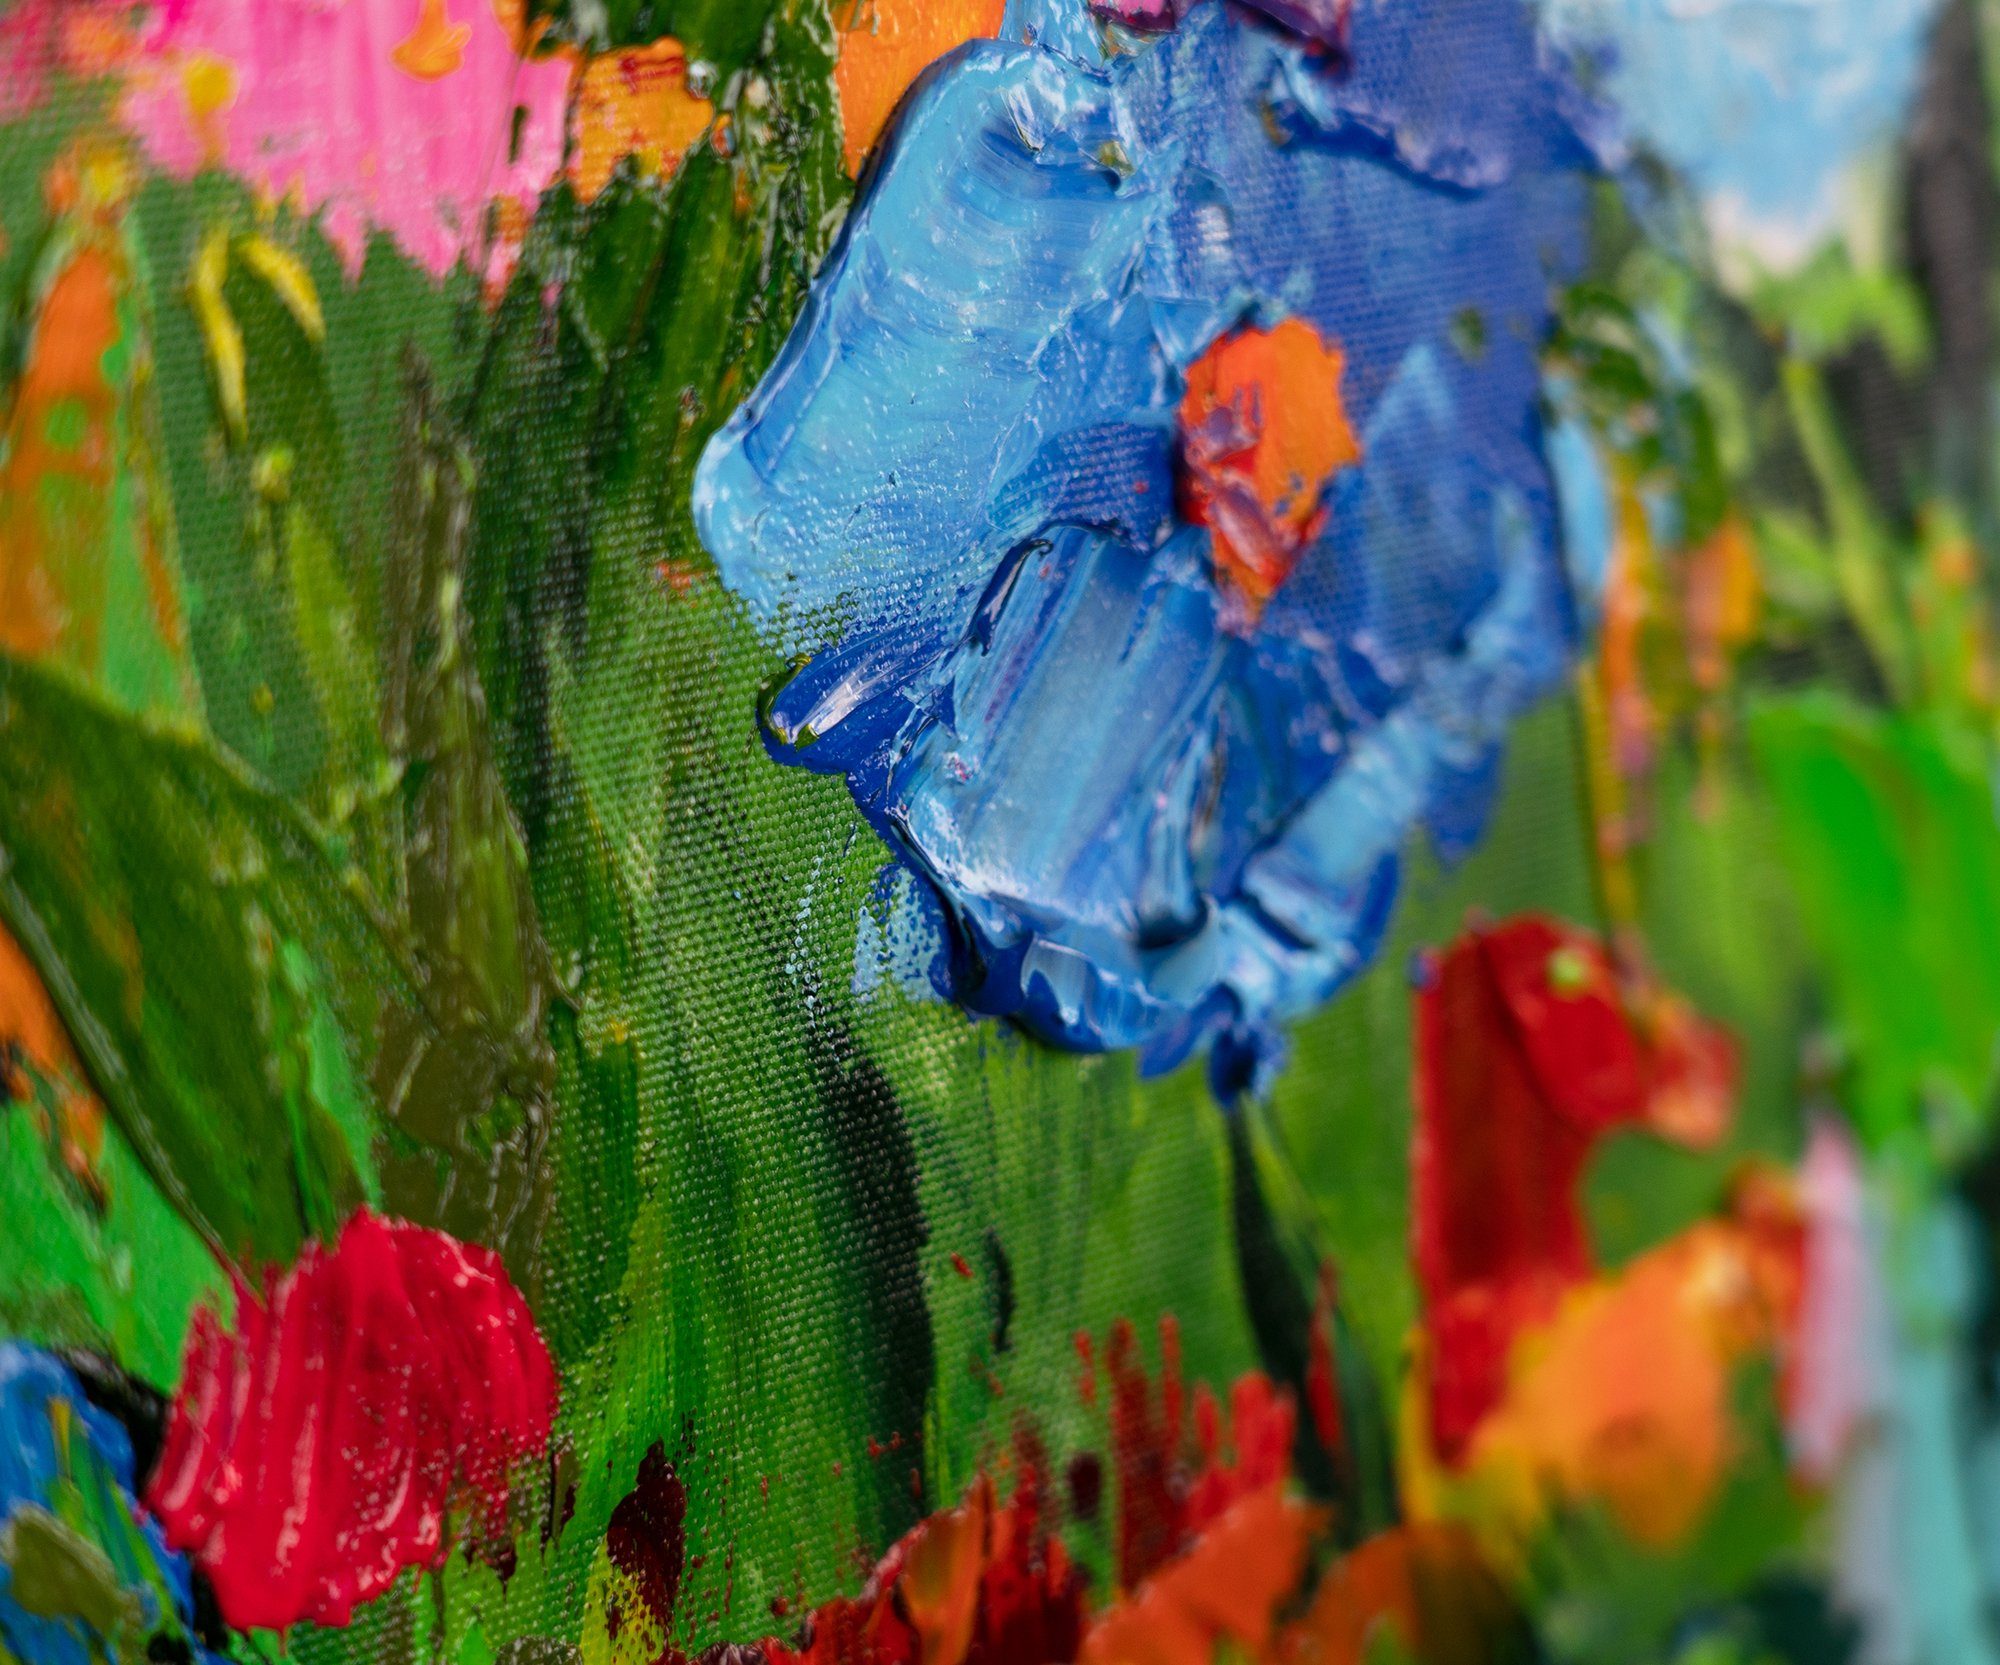 Blumige Rahmen Rosa Farben, in YS-Art Blumen Gemälde Mit